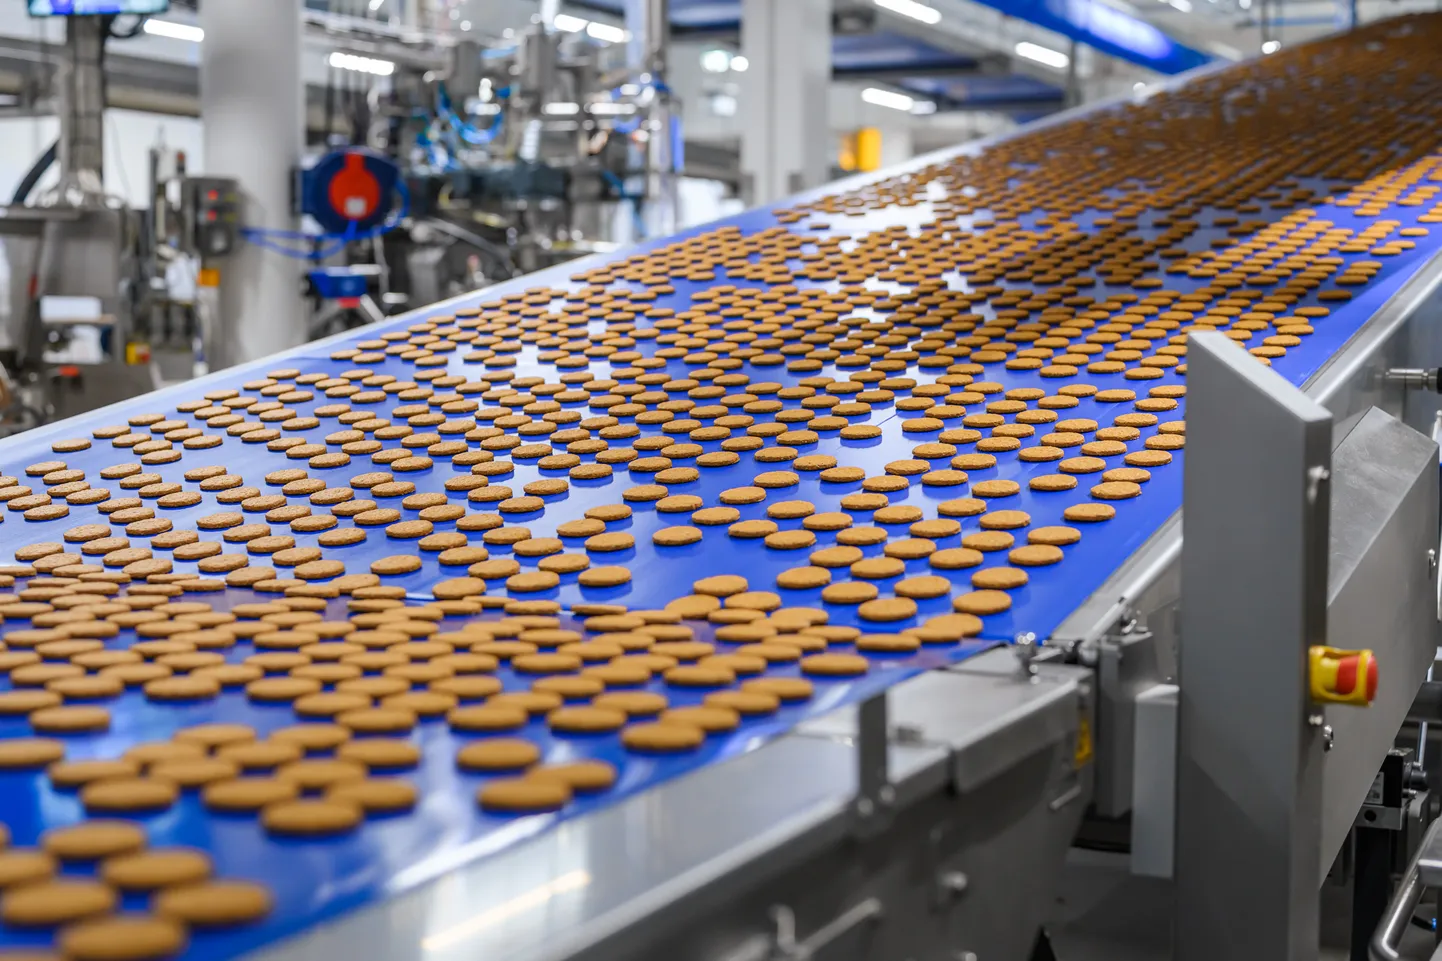  "Orkla Biscuit Production" cepumu un vafeļu ražotnes atklāšana

